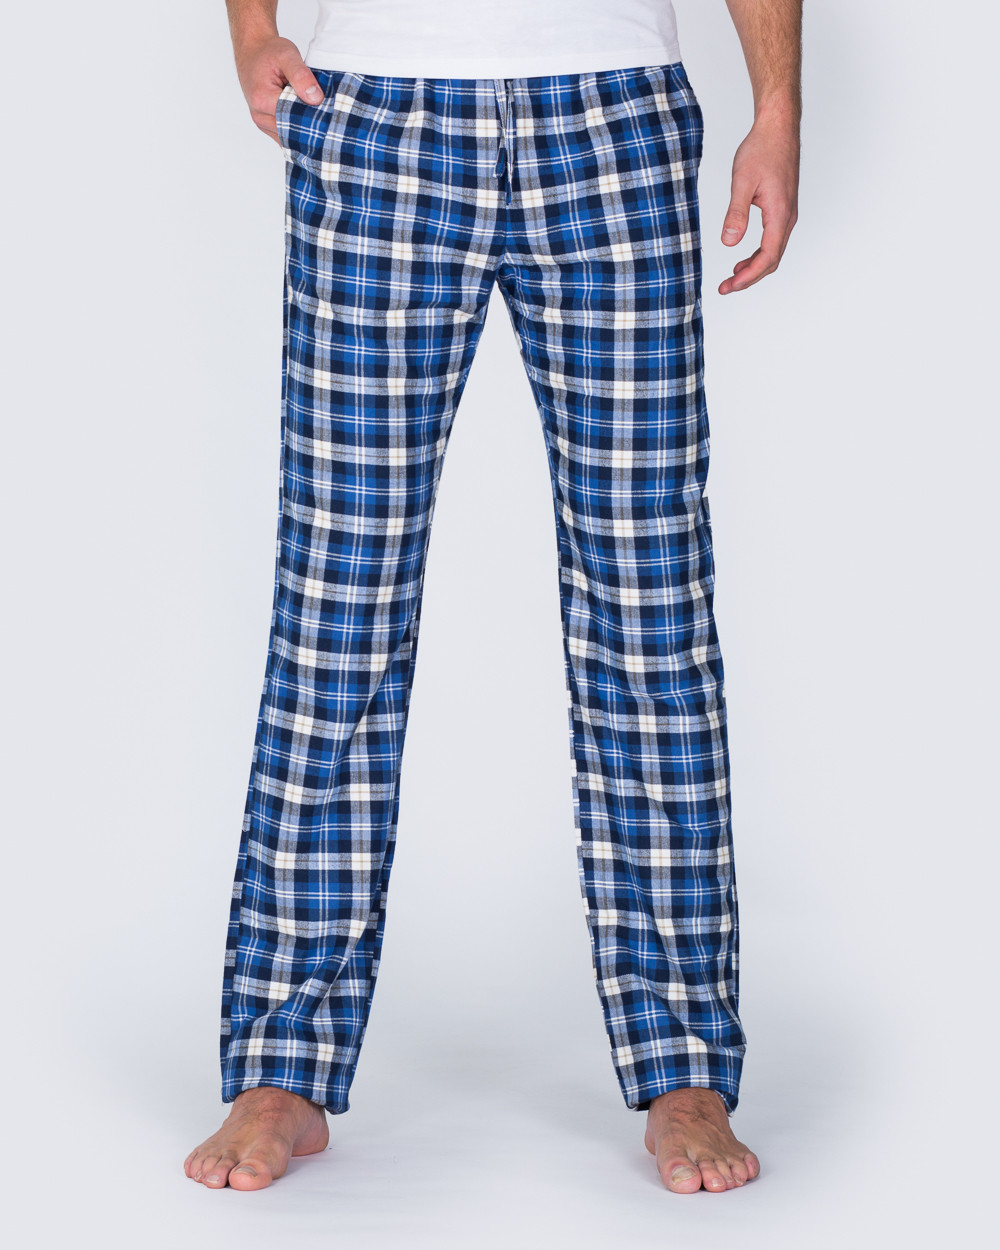 Pyjama bottoms